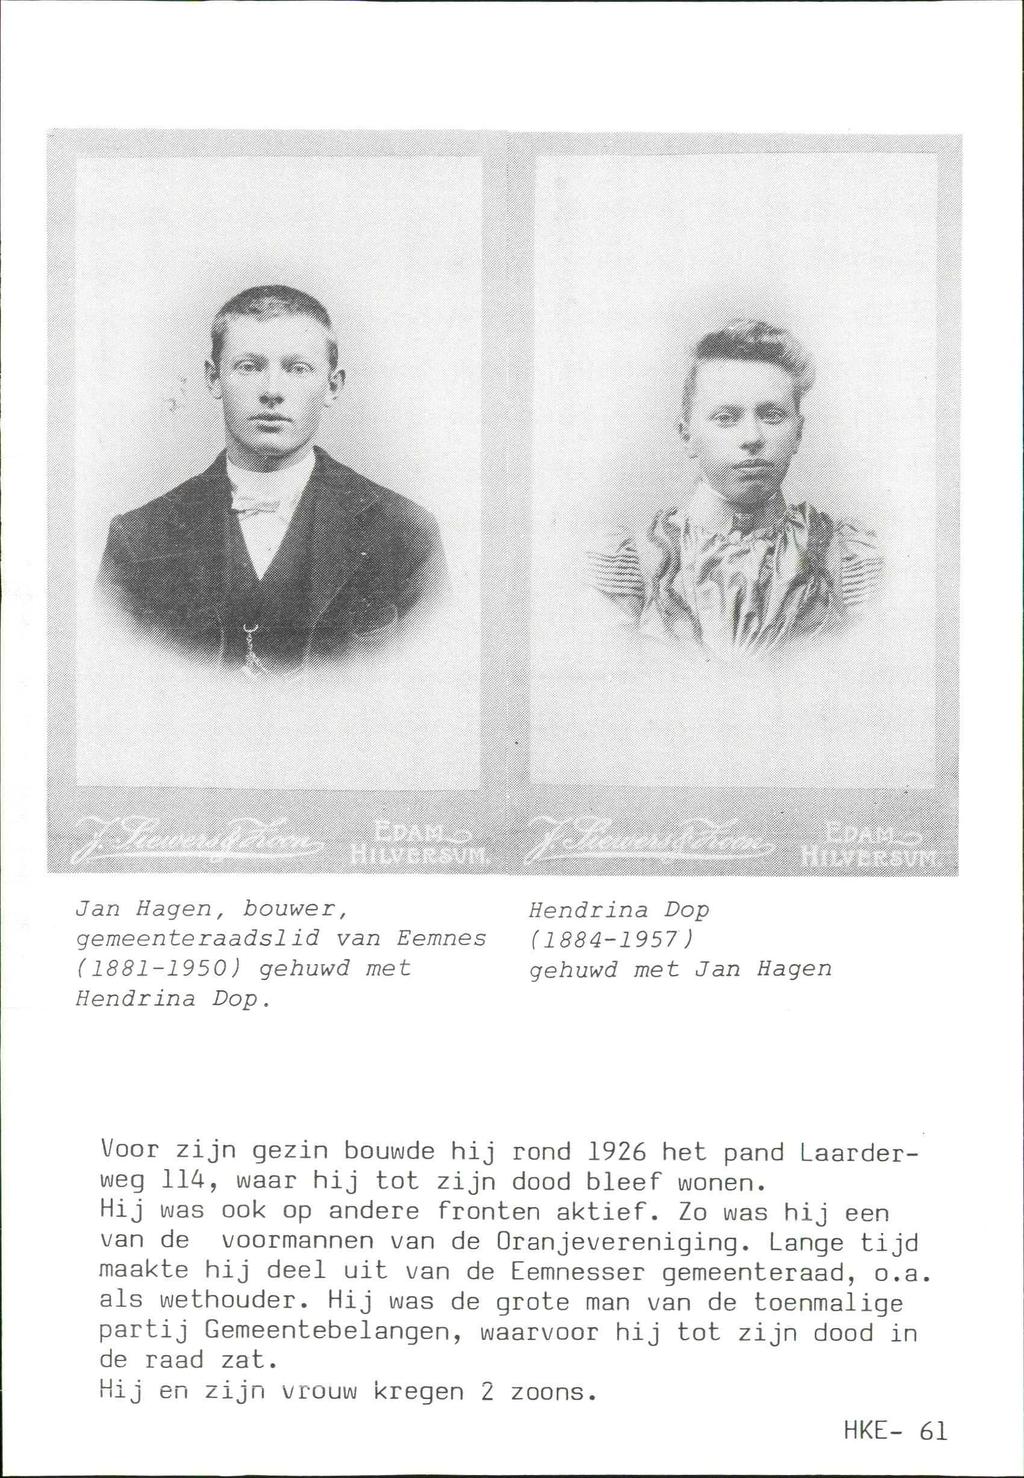 ;>, I. : ' : :., ':»:. : : : 'ï : Jan Hagen, bouwer, gemeenteraadslid van Eemnes (1881-1950) gehuwd met Hendrina Dop.